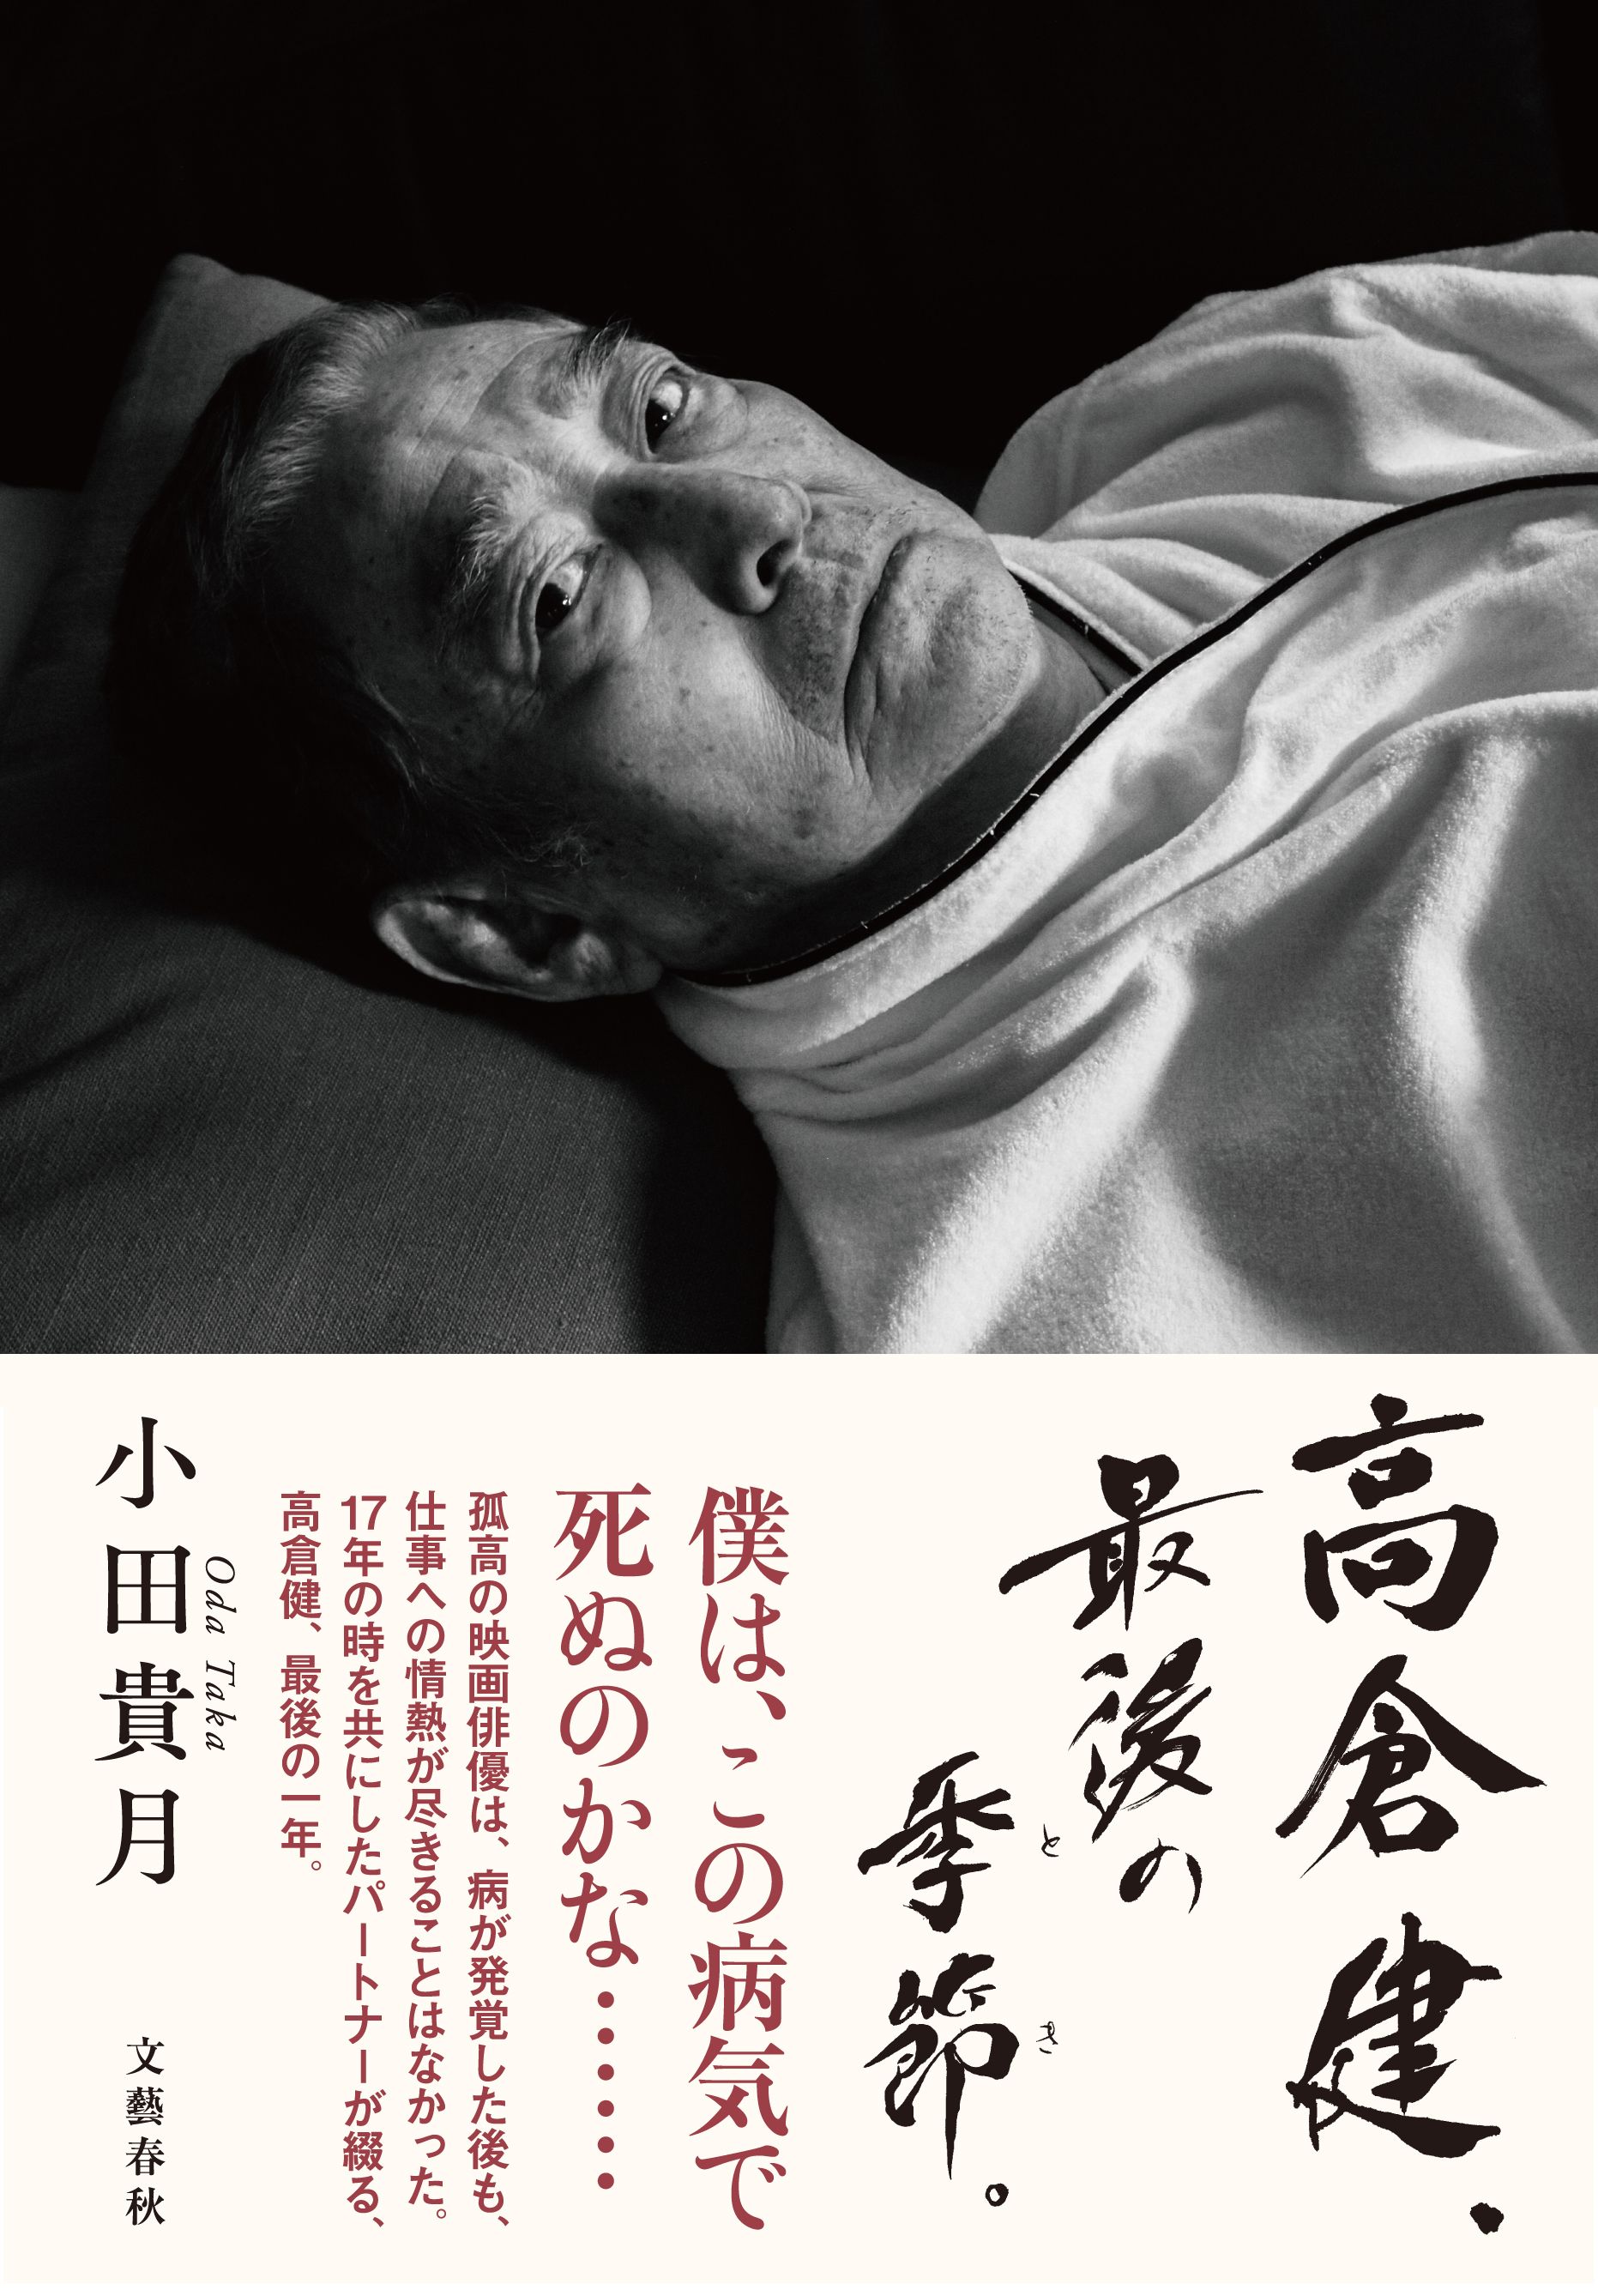 印象的なカバー写真は、小田貴月さんが撮影した病床の高倉健さん。 3月29日発売の『高倉健、最期の季節（とき）。』（文藝春秋）